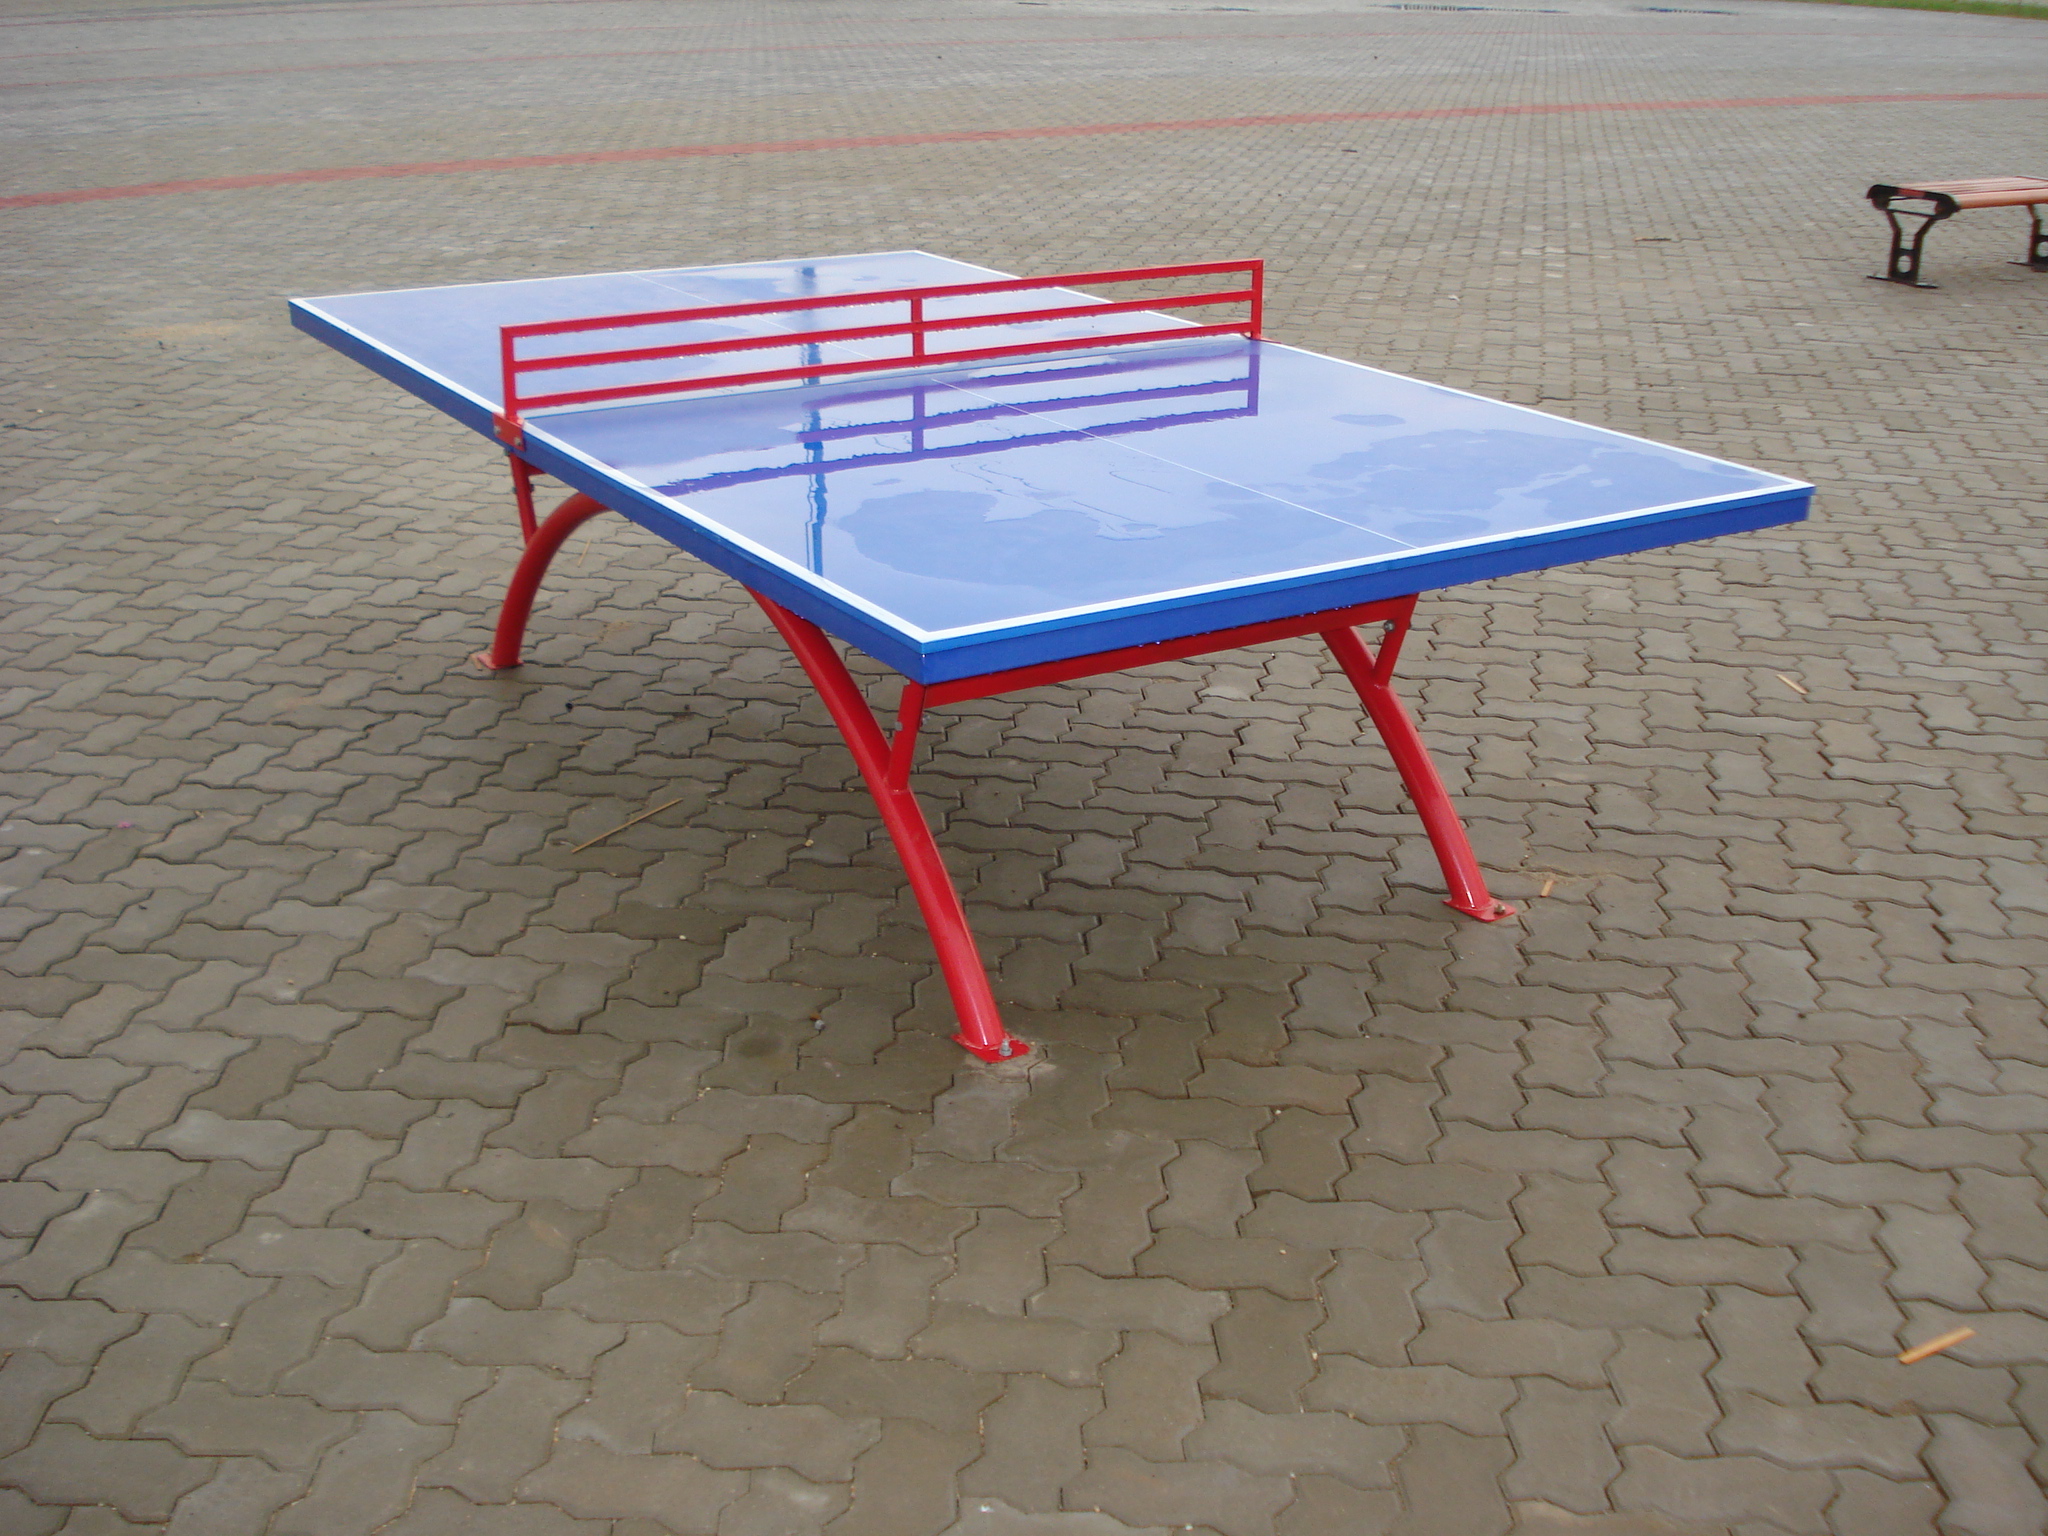 乒乓球台生产厂家 乒乓球台批发 乒乓球台高清图片 乒乓球台排名